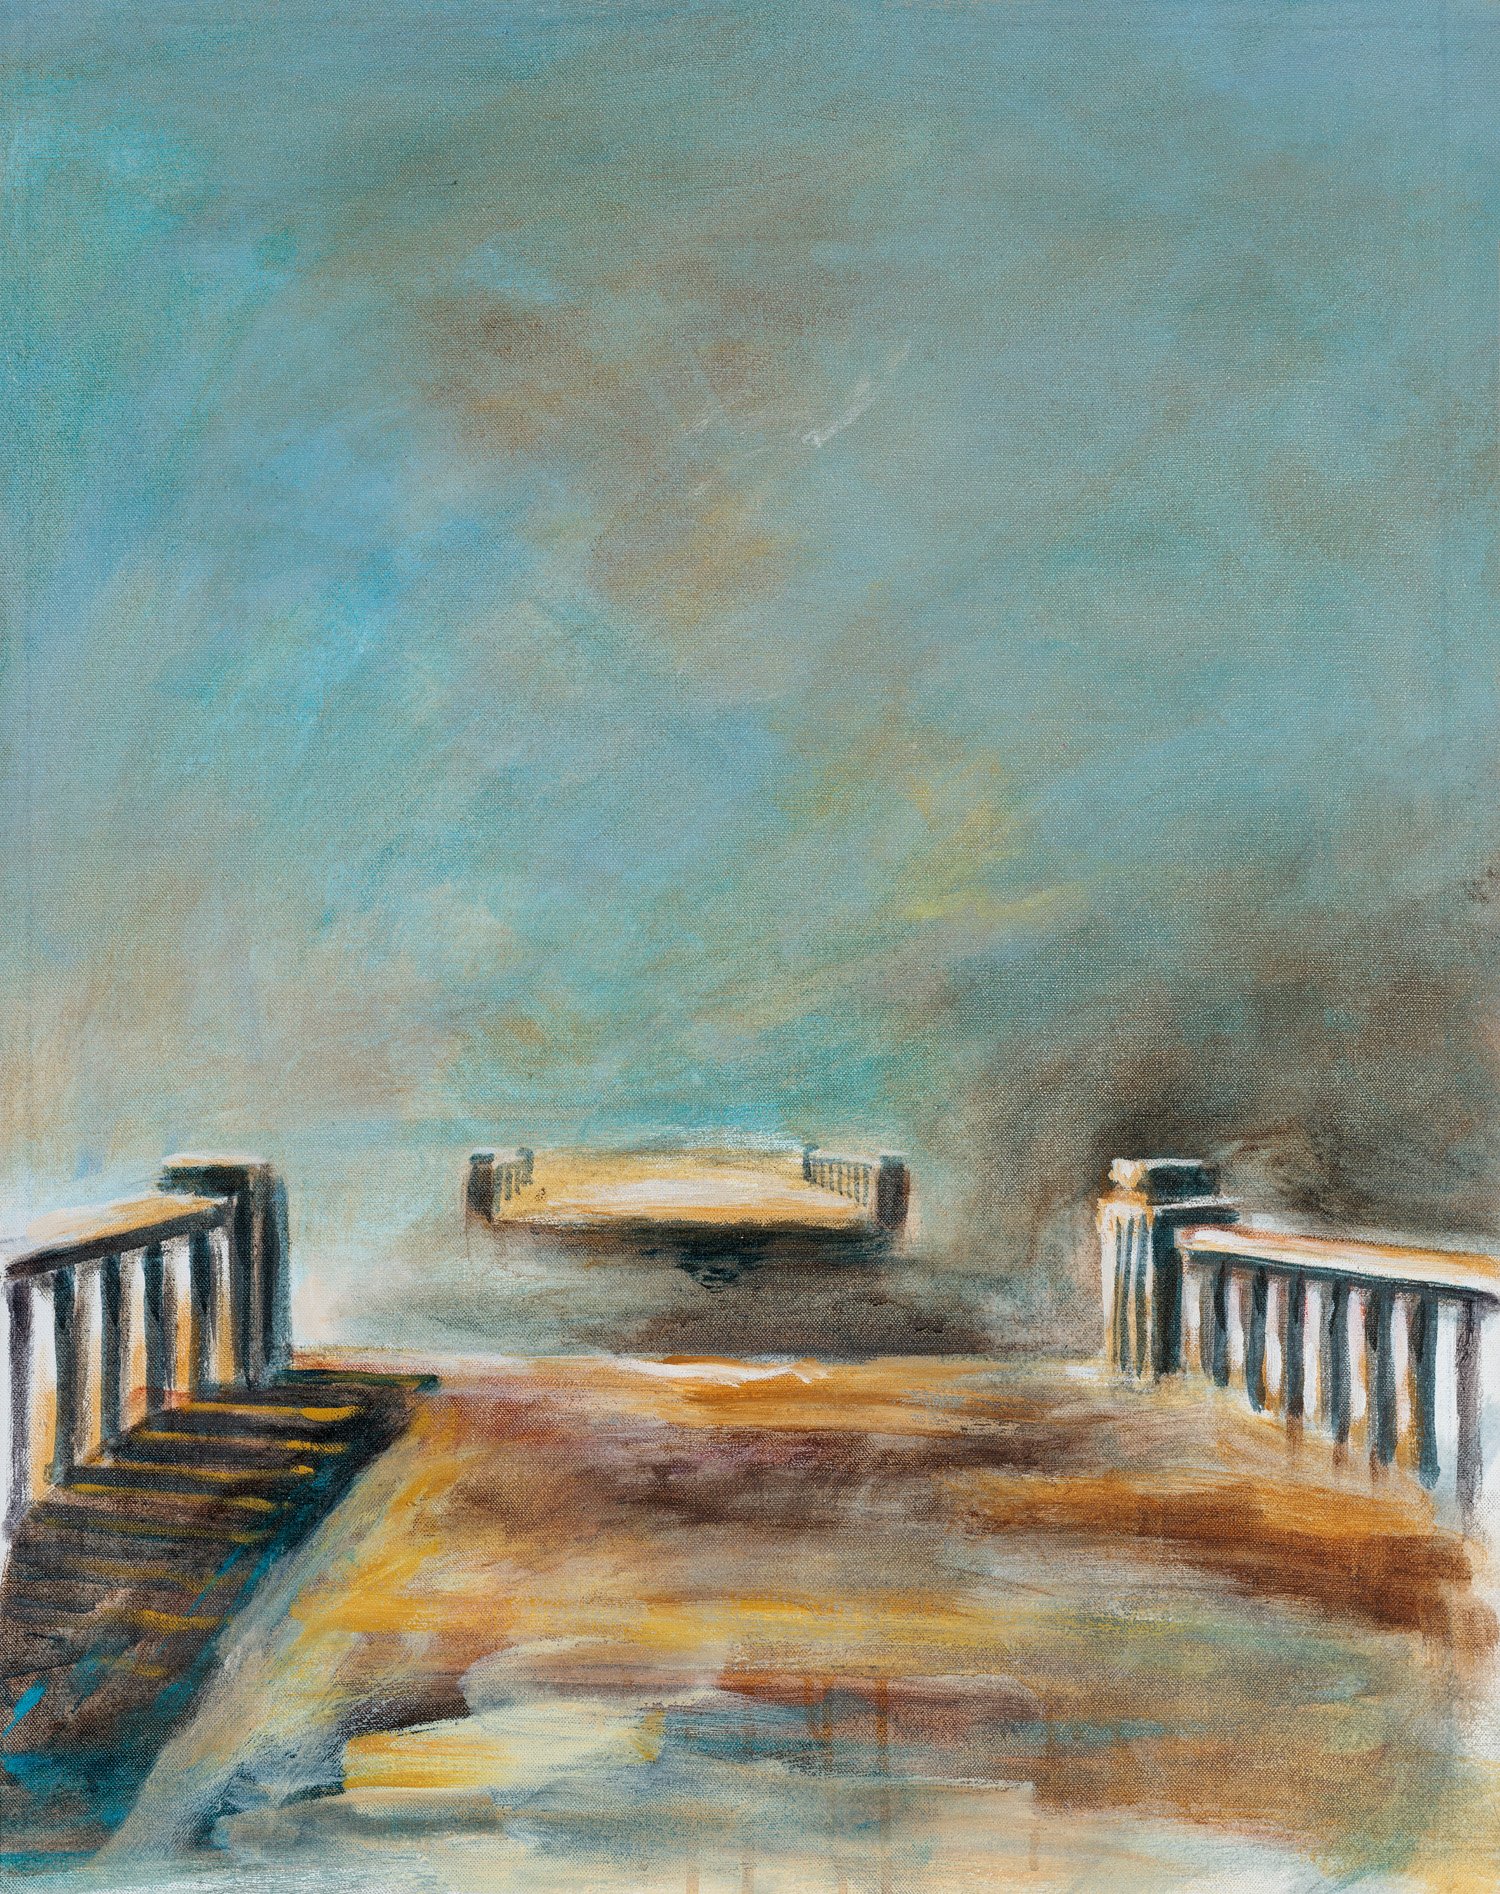 Bridge Ruin 1, Canaan Forks, NB - 30” x 24”,  Acrylic on Canvas, $1200